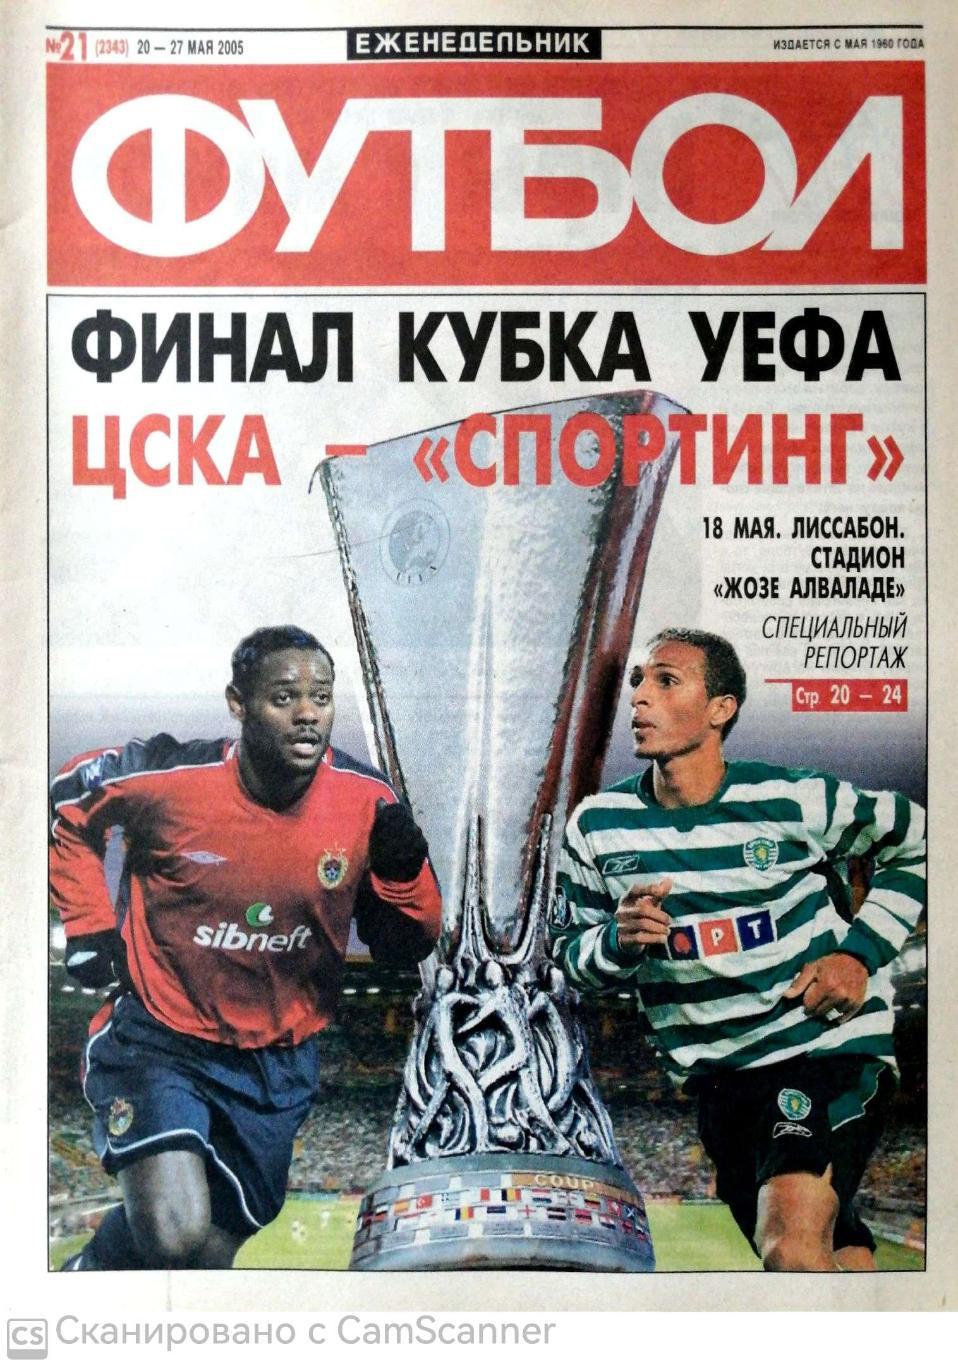 Еженедельник «Футбол» (Москва). 2005 год. №21 финал КУ цска-спортинг